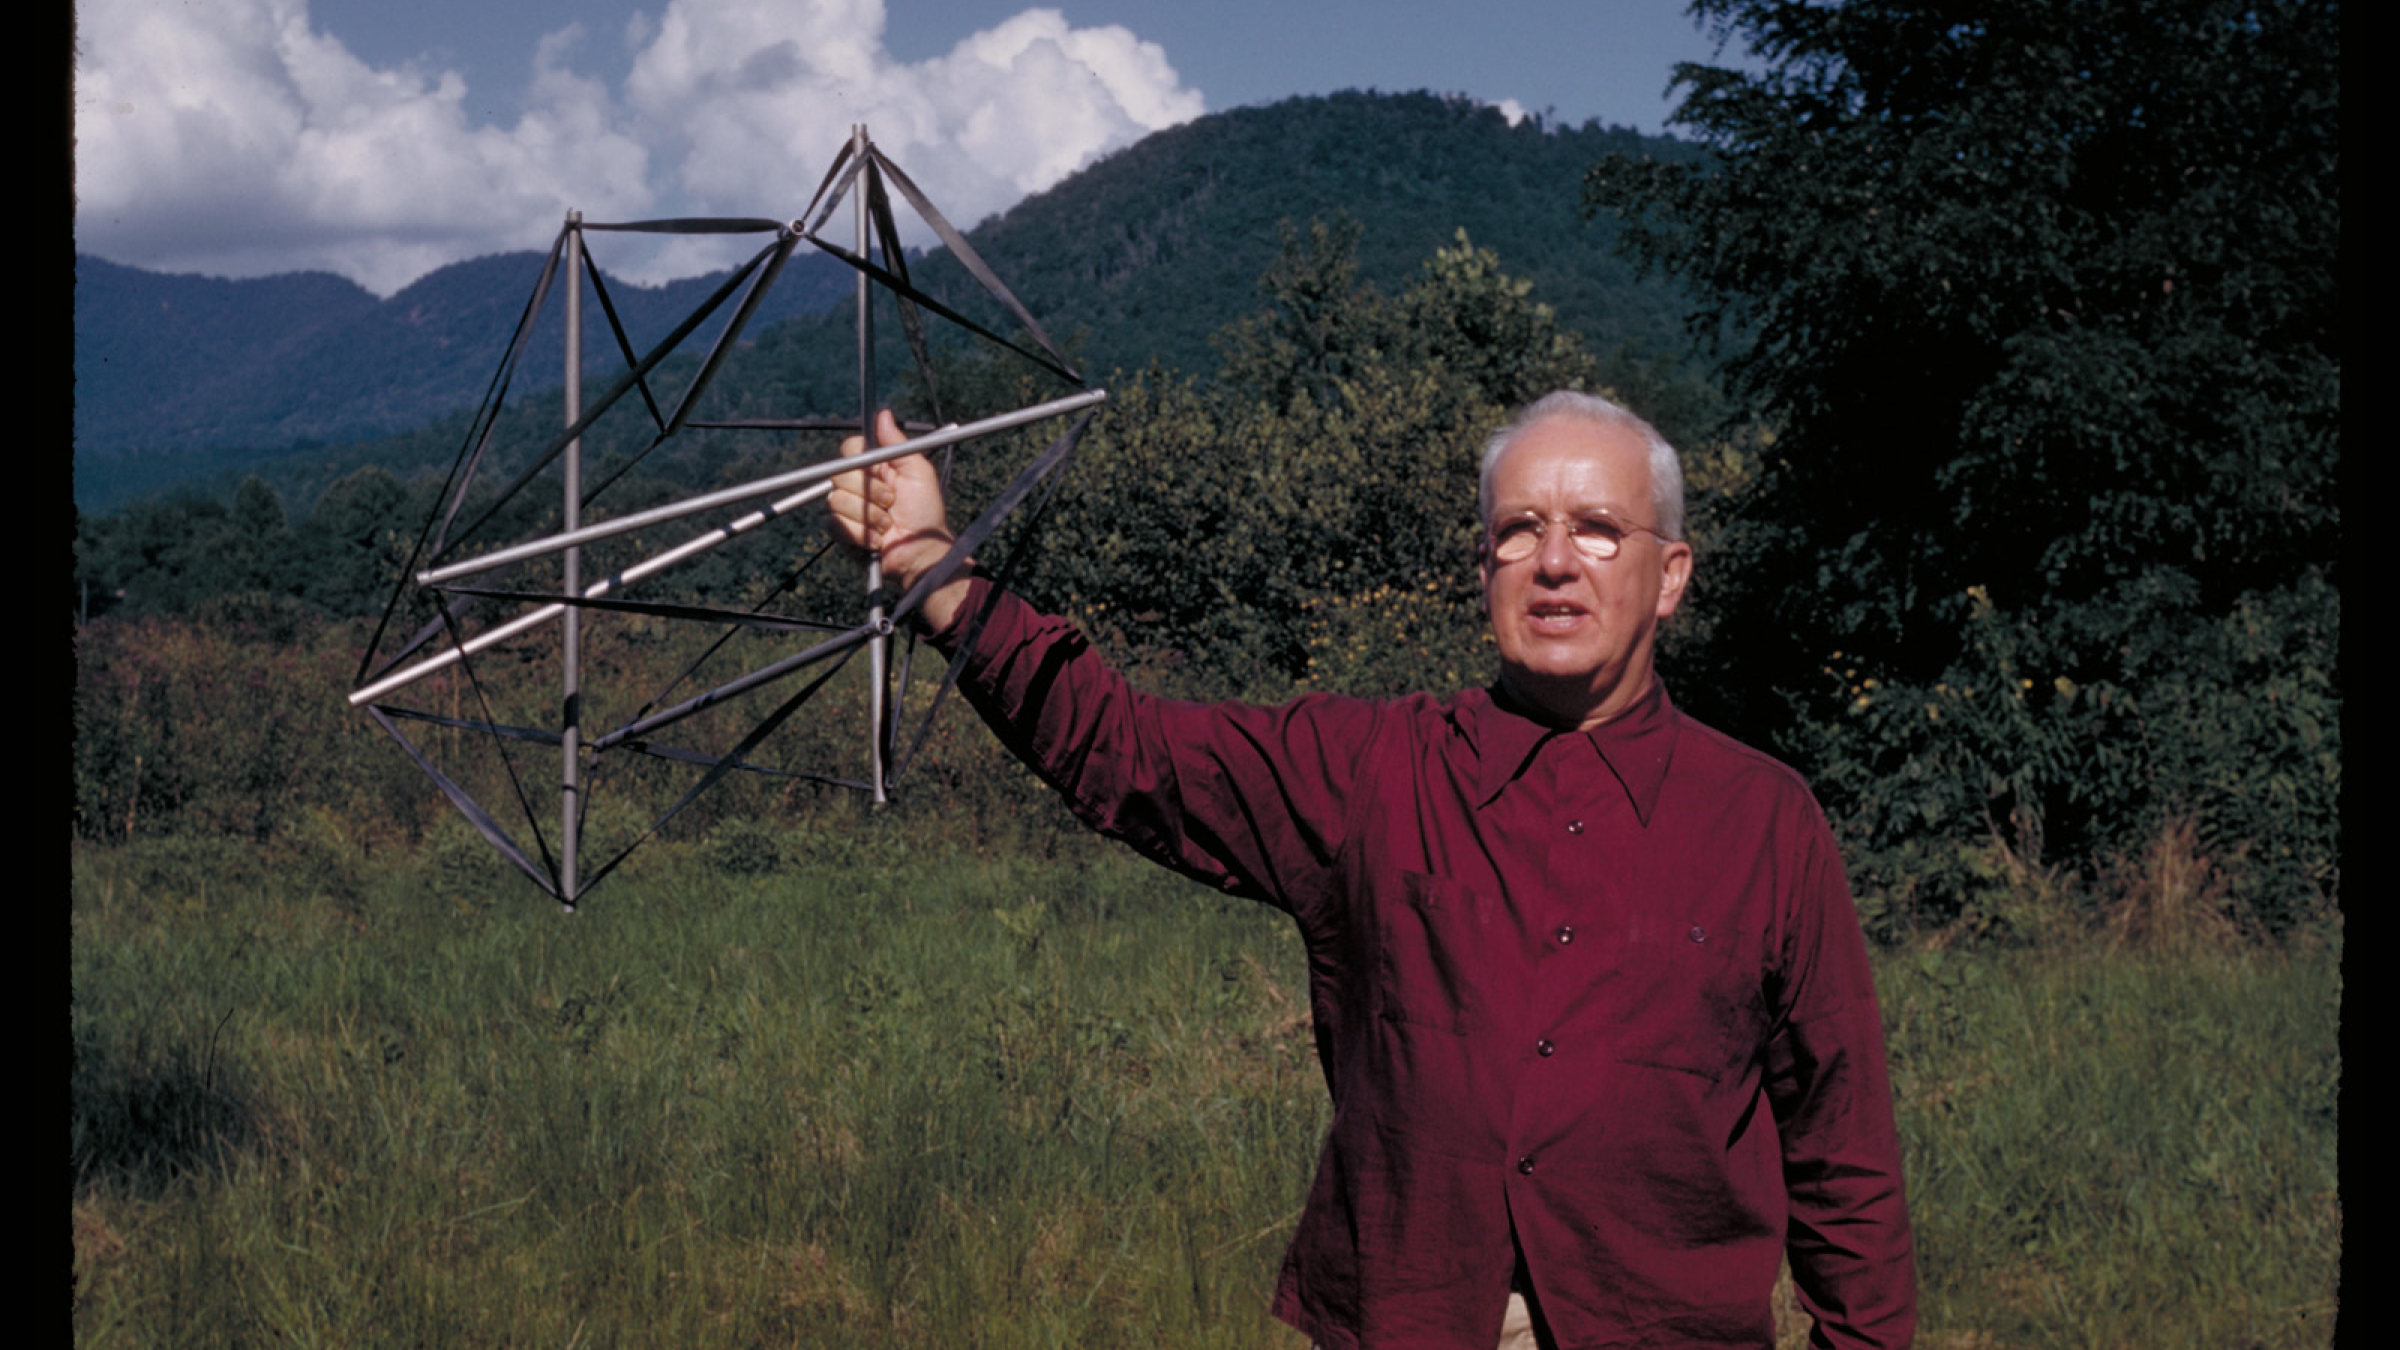 Images courtesy of the Estate of R. Buckminster Fuller.